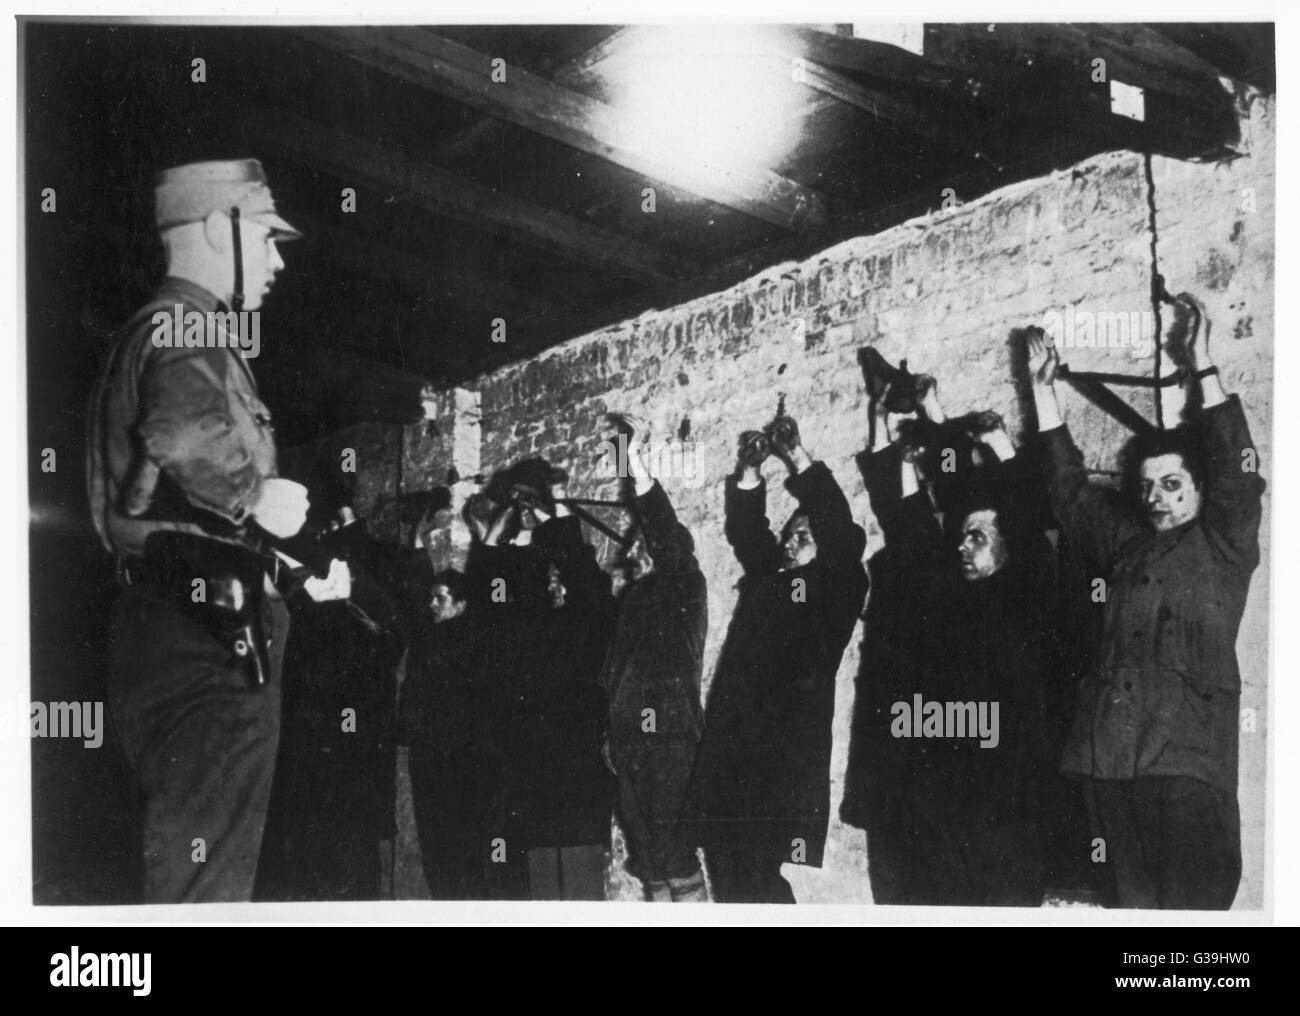 Prisonniers politiques avec les bras levés sont alignés contre un mur d'une arme à feu et détenues par la SA. Date : Janvier 1933 Banque D'Images